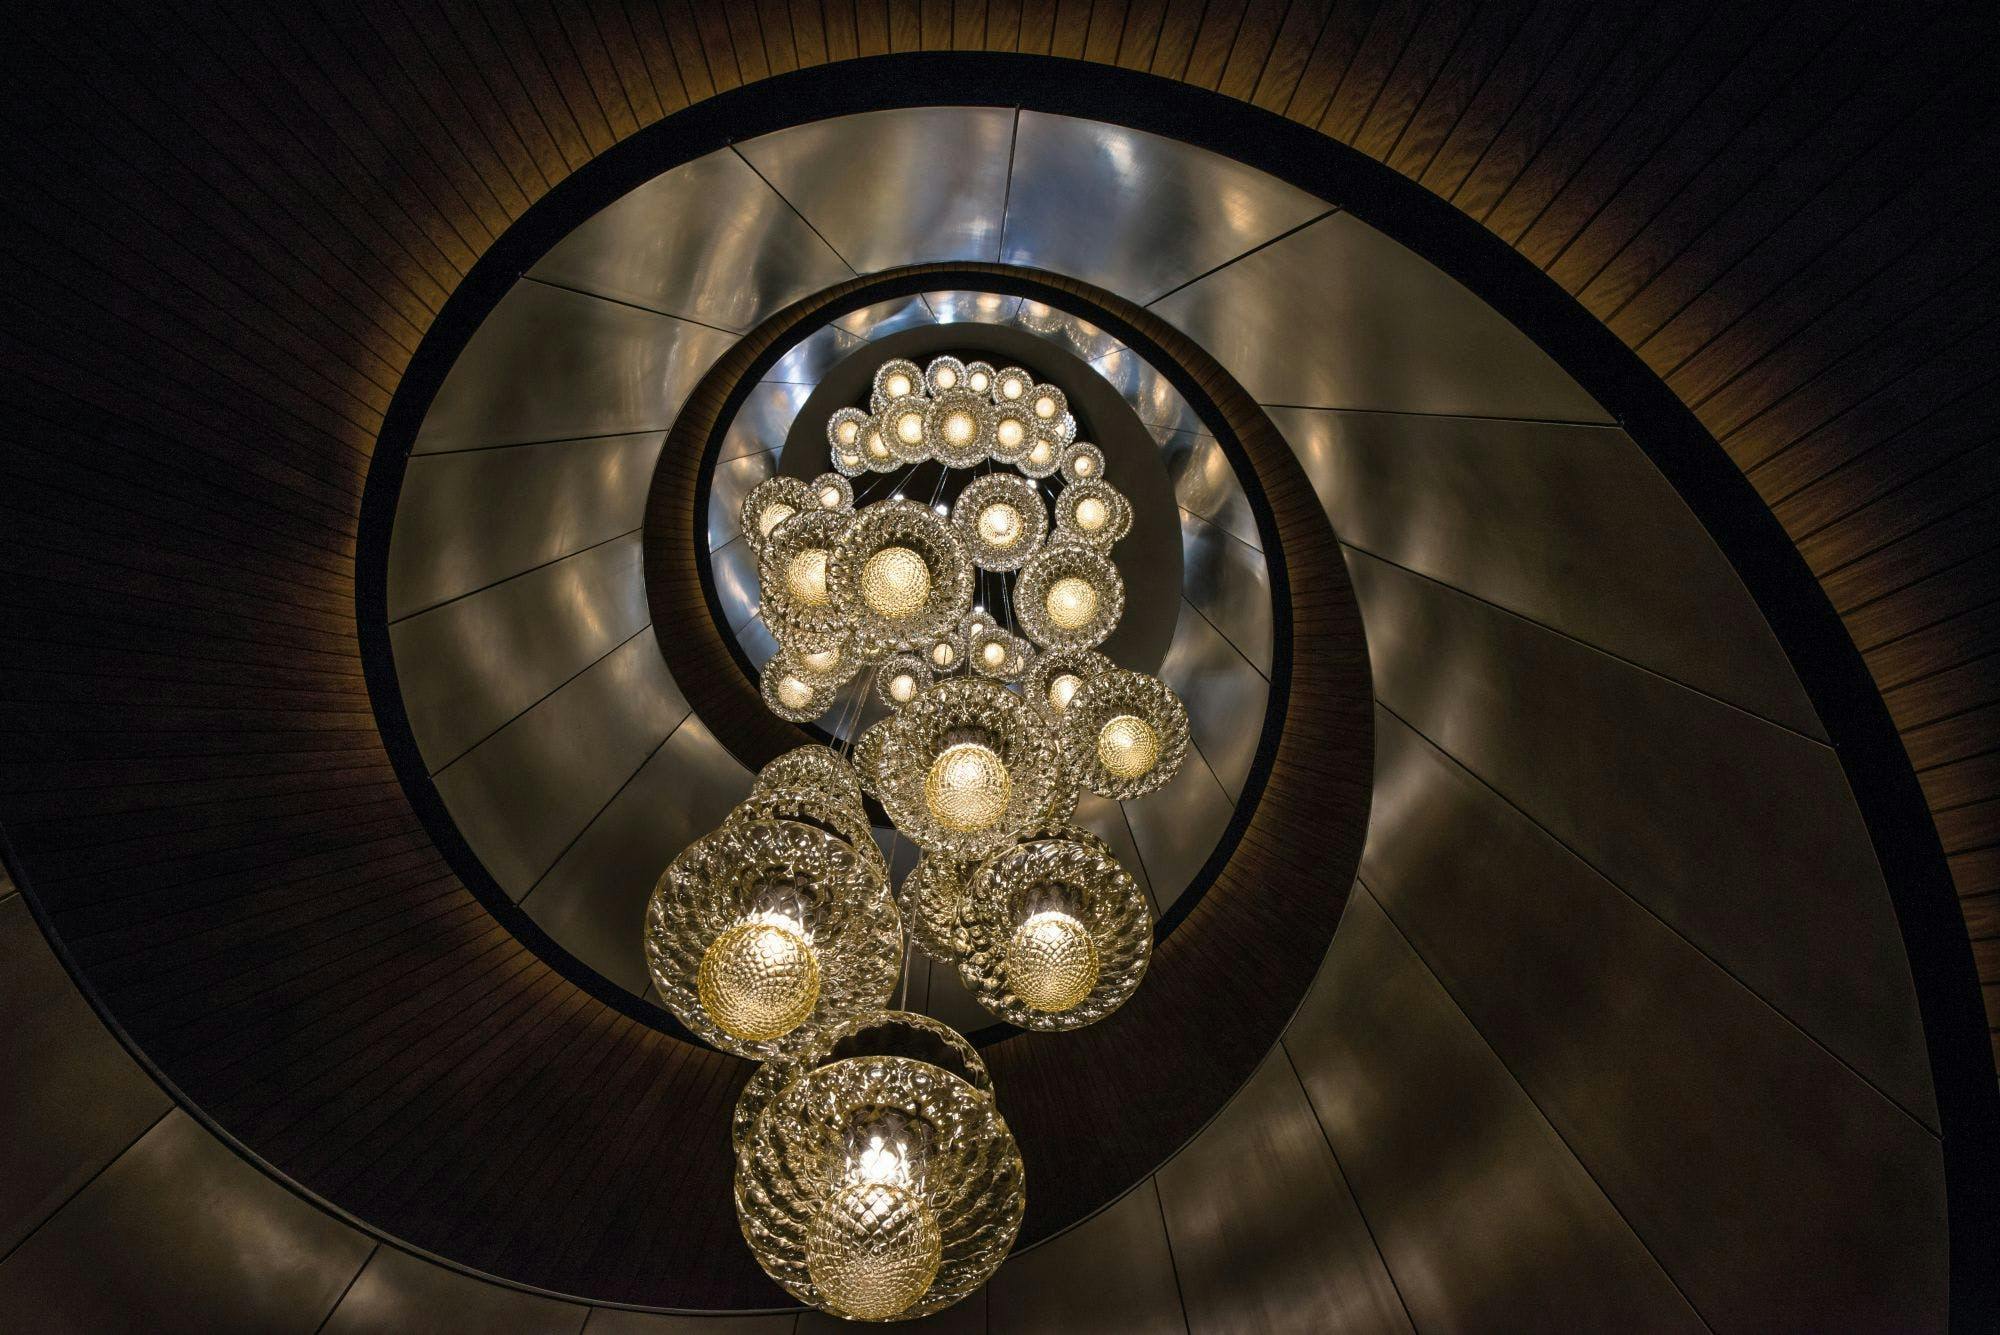 lighting handrail banister chandelier lamp crystal light fixture